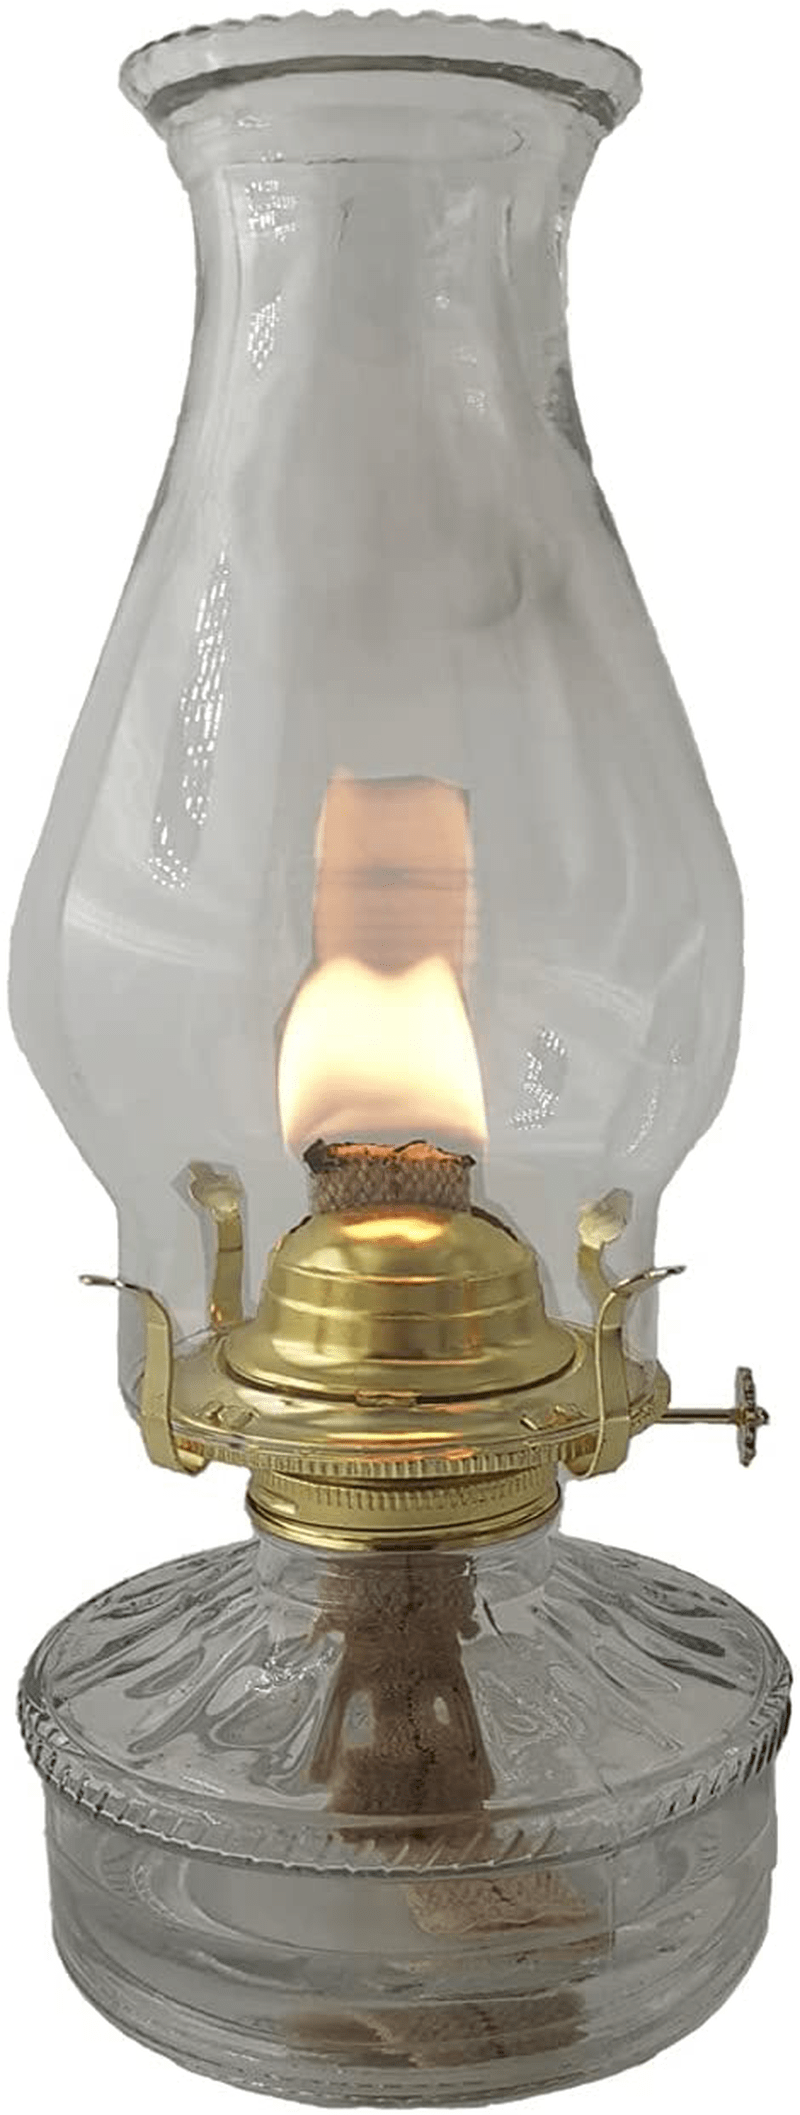 amanigo Oil-Lamp Glass Kerosene Lantern - Large Classic Oil Lamp for Indoor Use Home & Garden > Lighting Accessories > Oil Lamp Fuel amanigo   